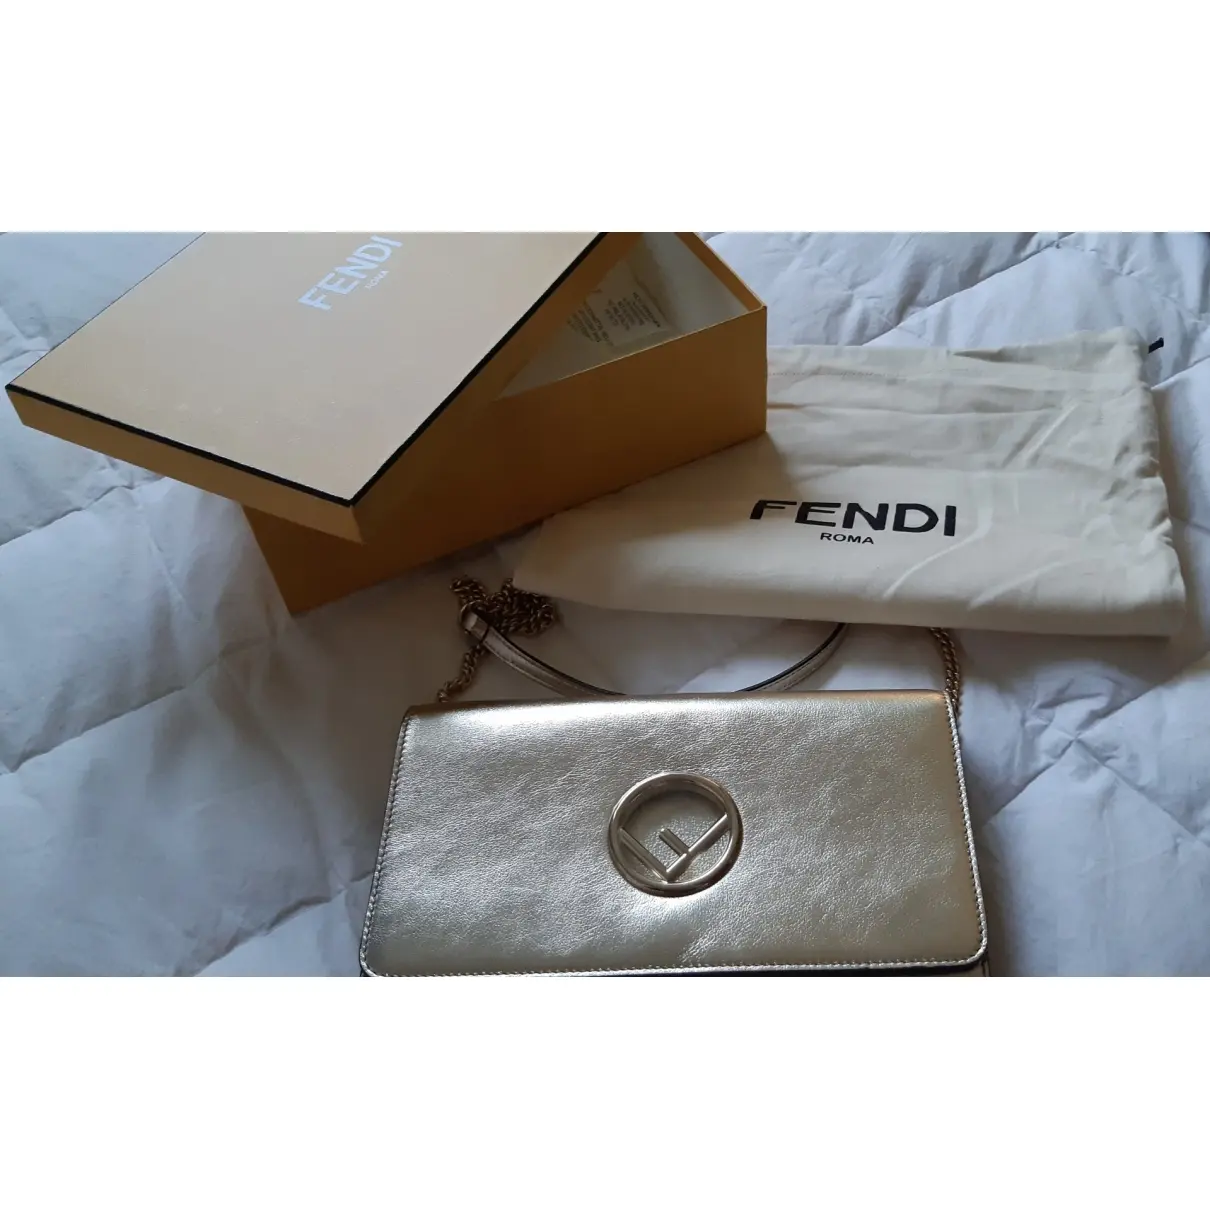 Fendi Kan I logo leather clutch bag for sale